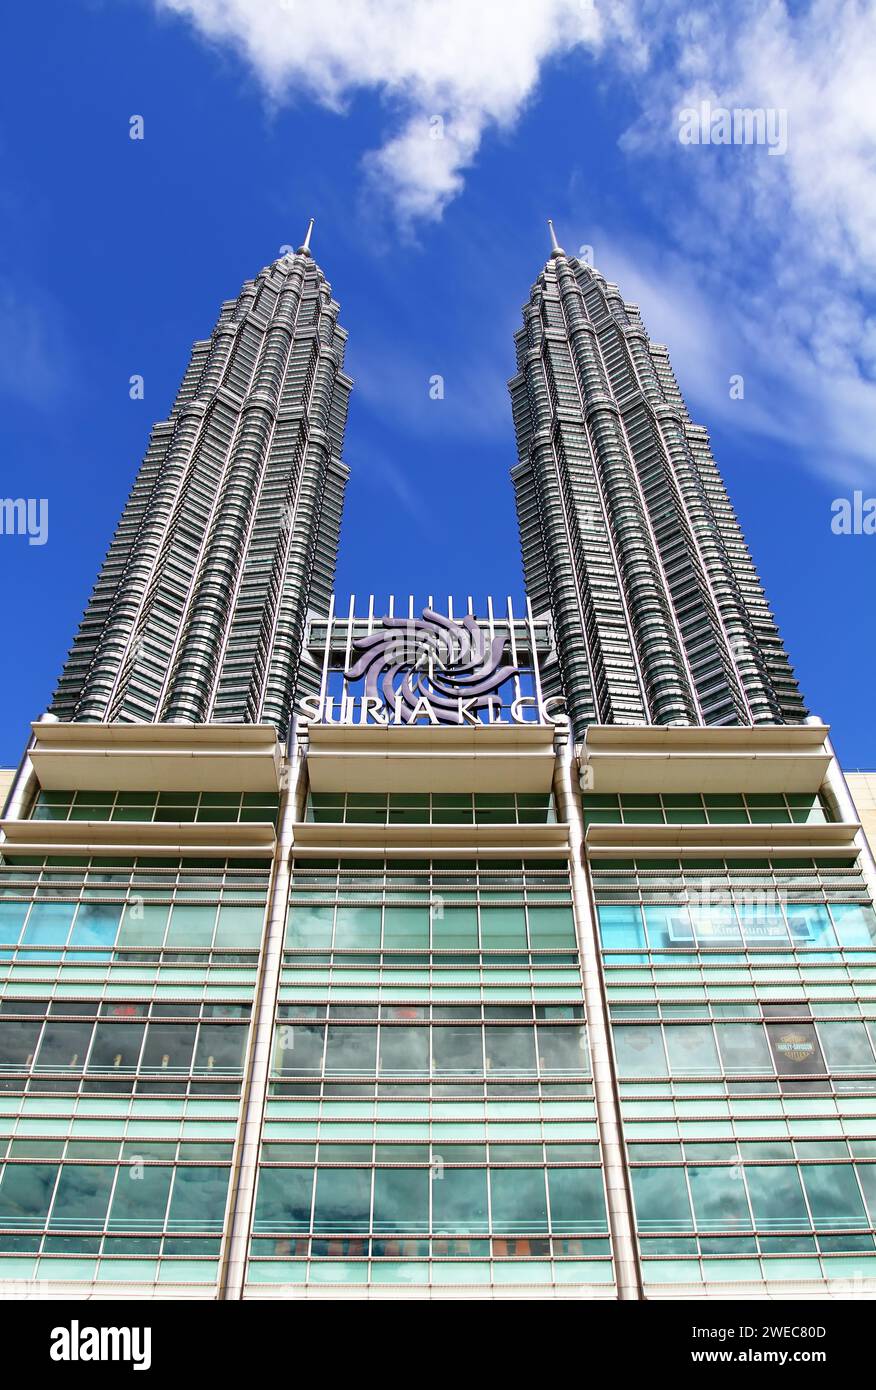 Tours jumelles Petronas ou KLCC vues depuis le parc KLCC à Kuala Lumpur, Malaisie. Banque D'Images